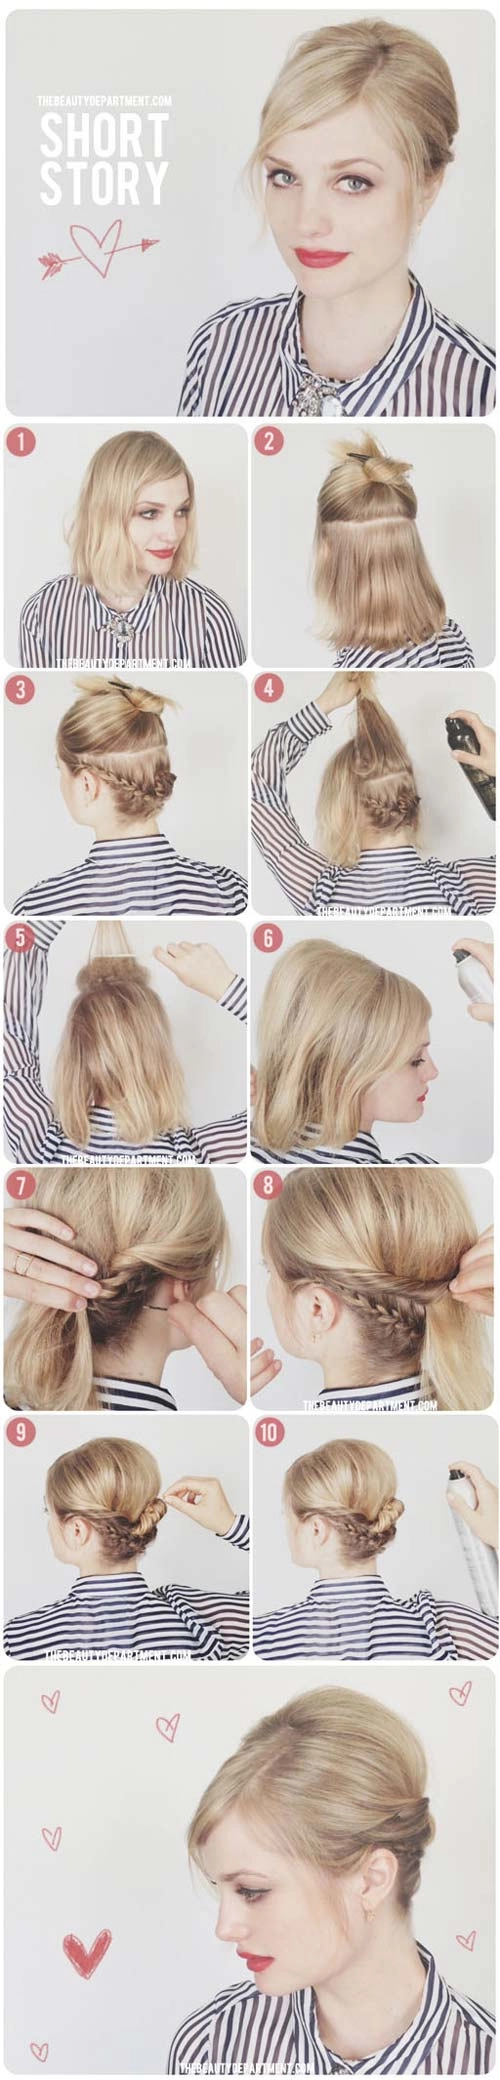 8 kiểu tết tóc sinh ra để dành riêng cho những cô nàng tóc ngắn - 5